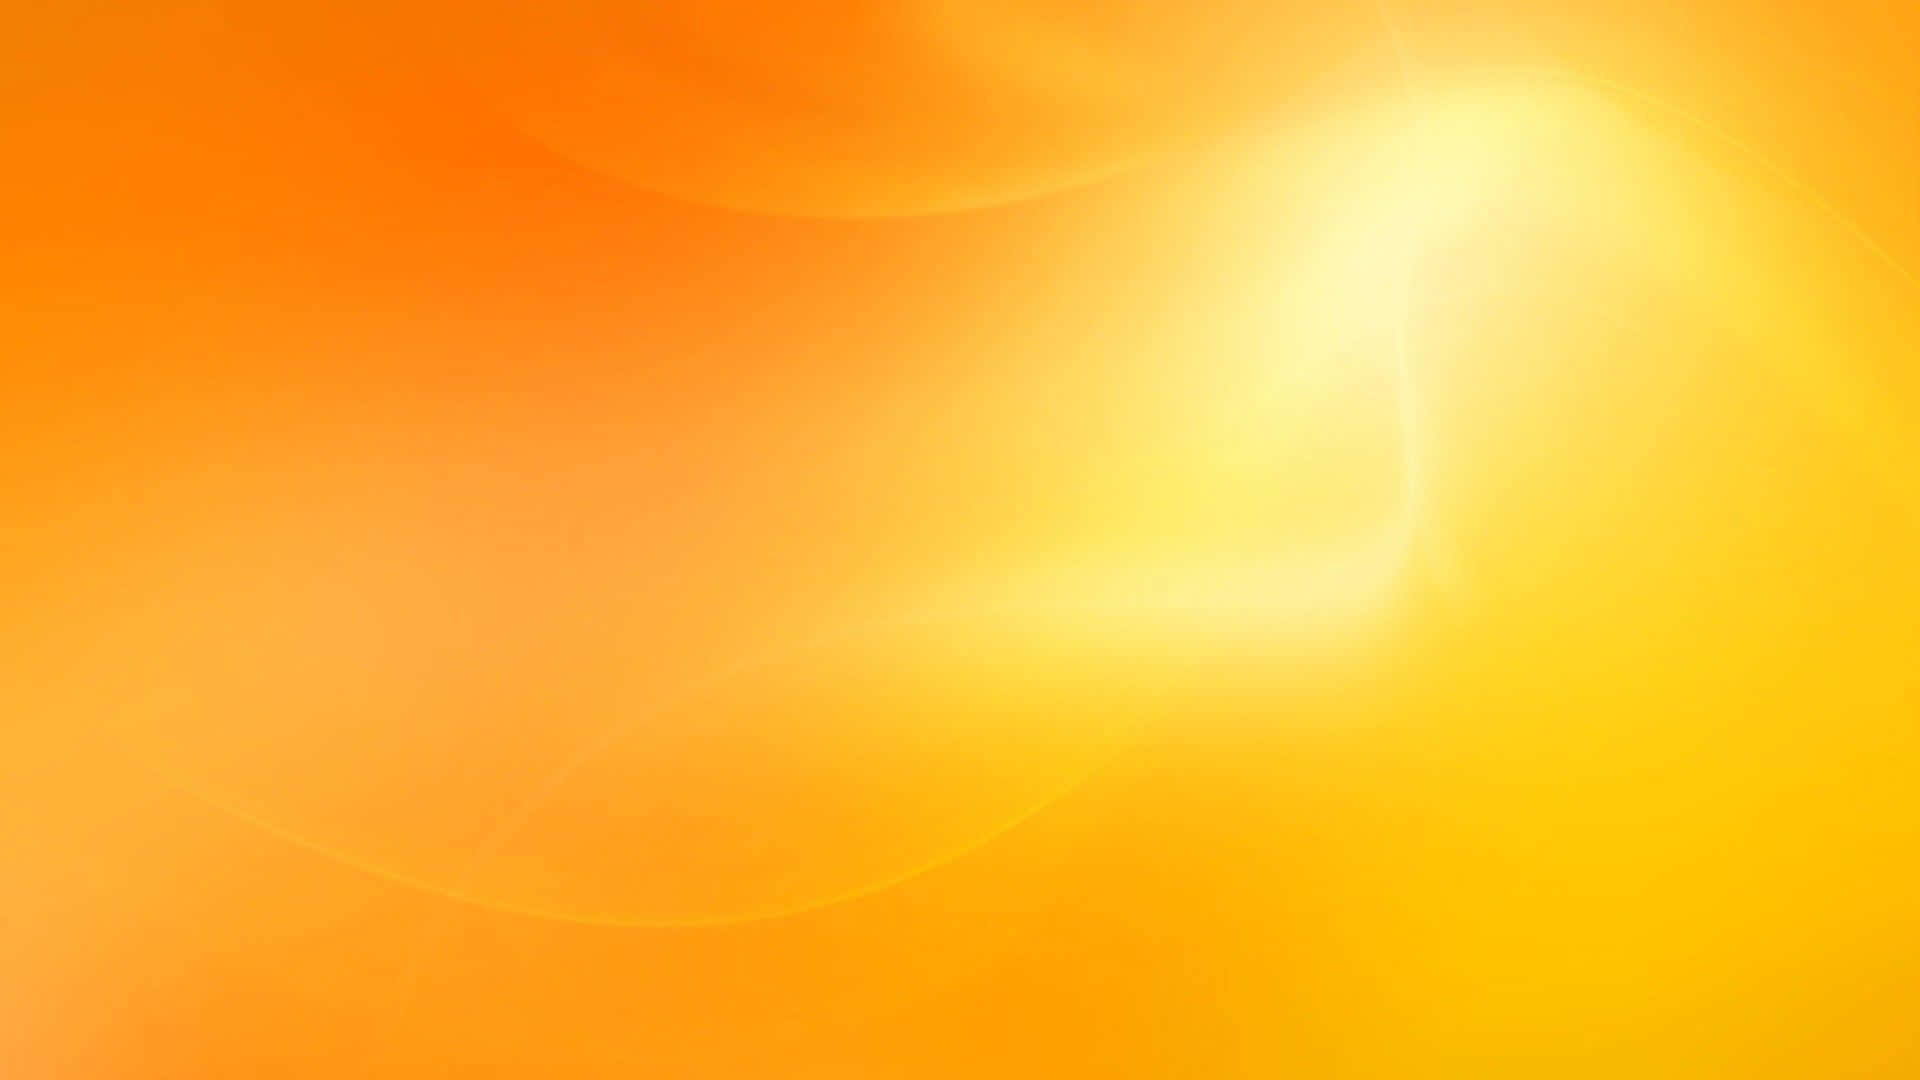 A Soft and Subtly Shining Light Orange Background